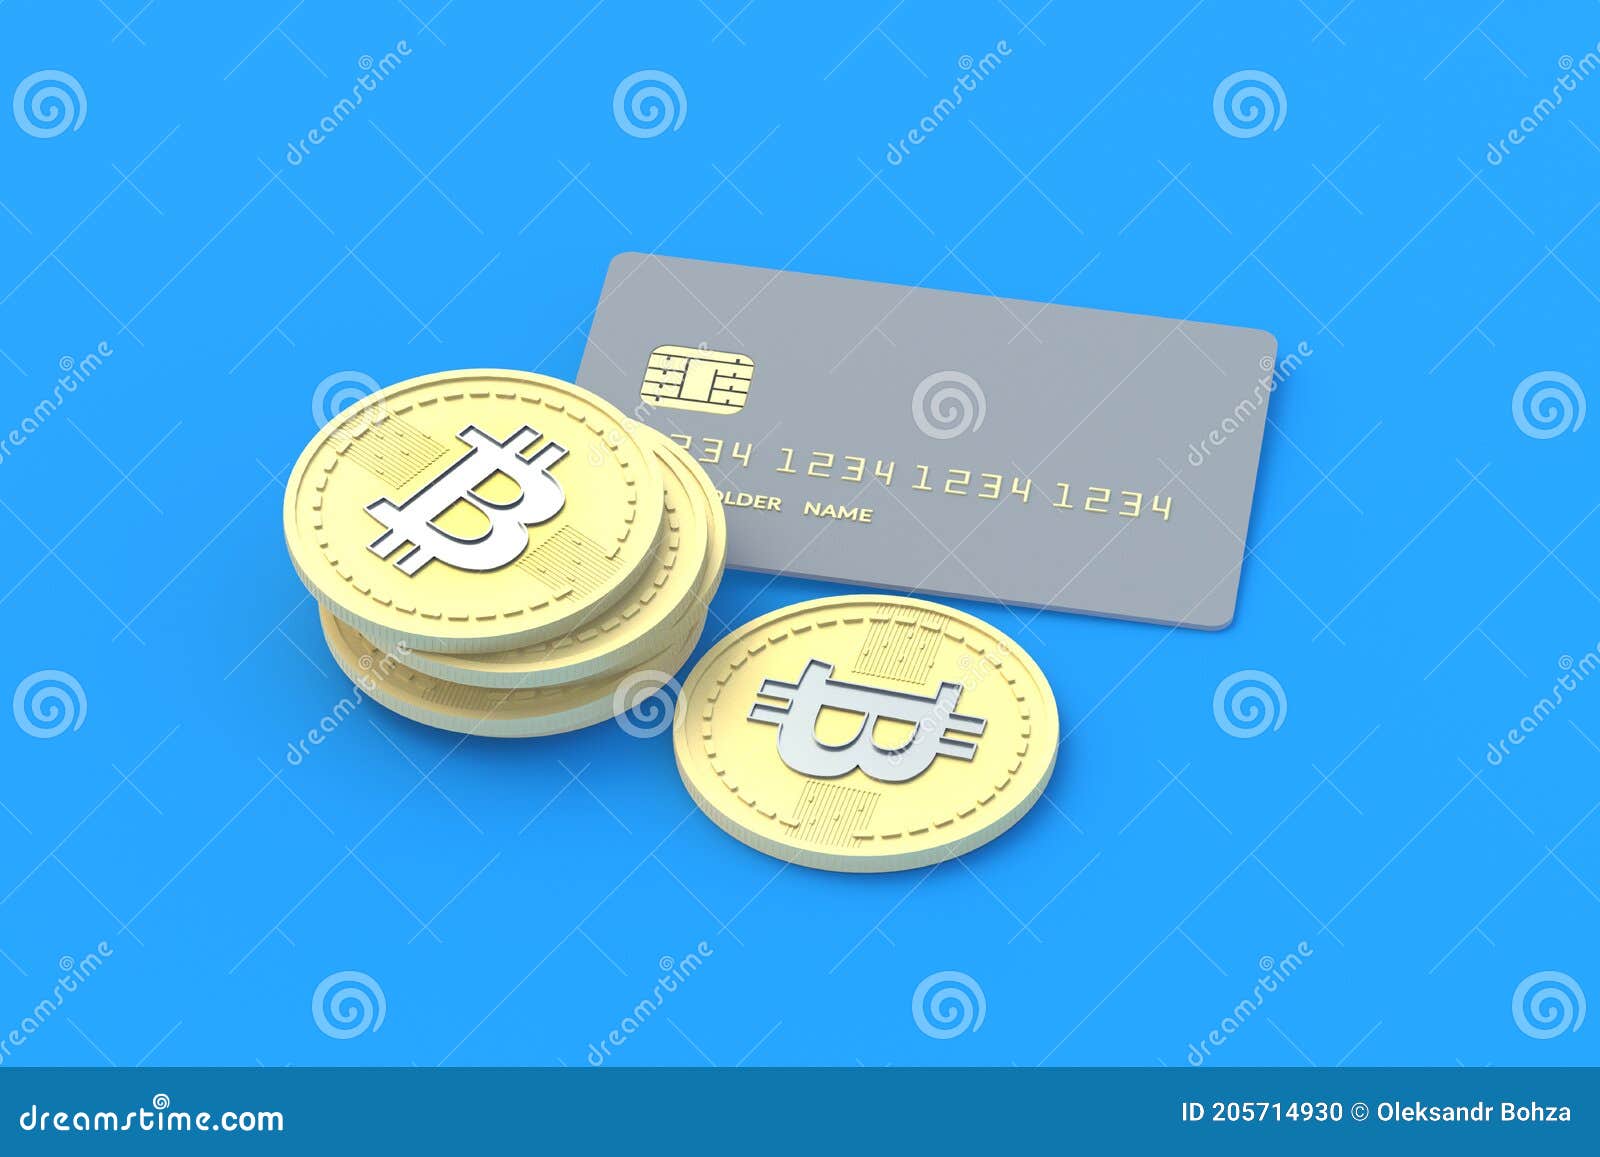 bitcoin plata anonimă)